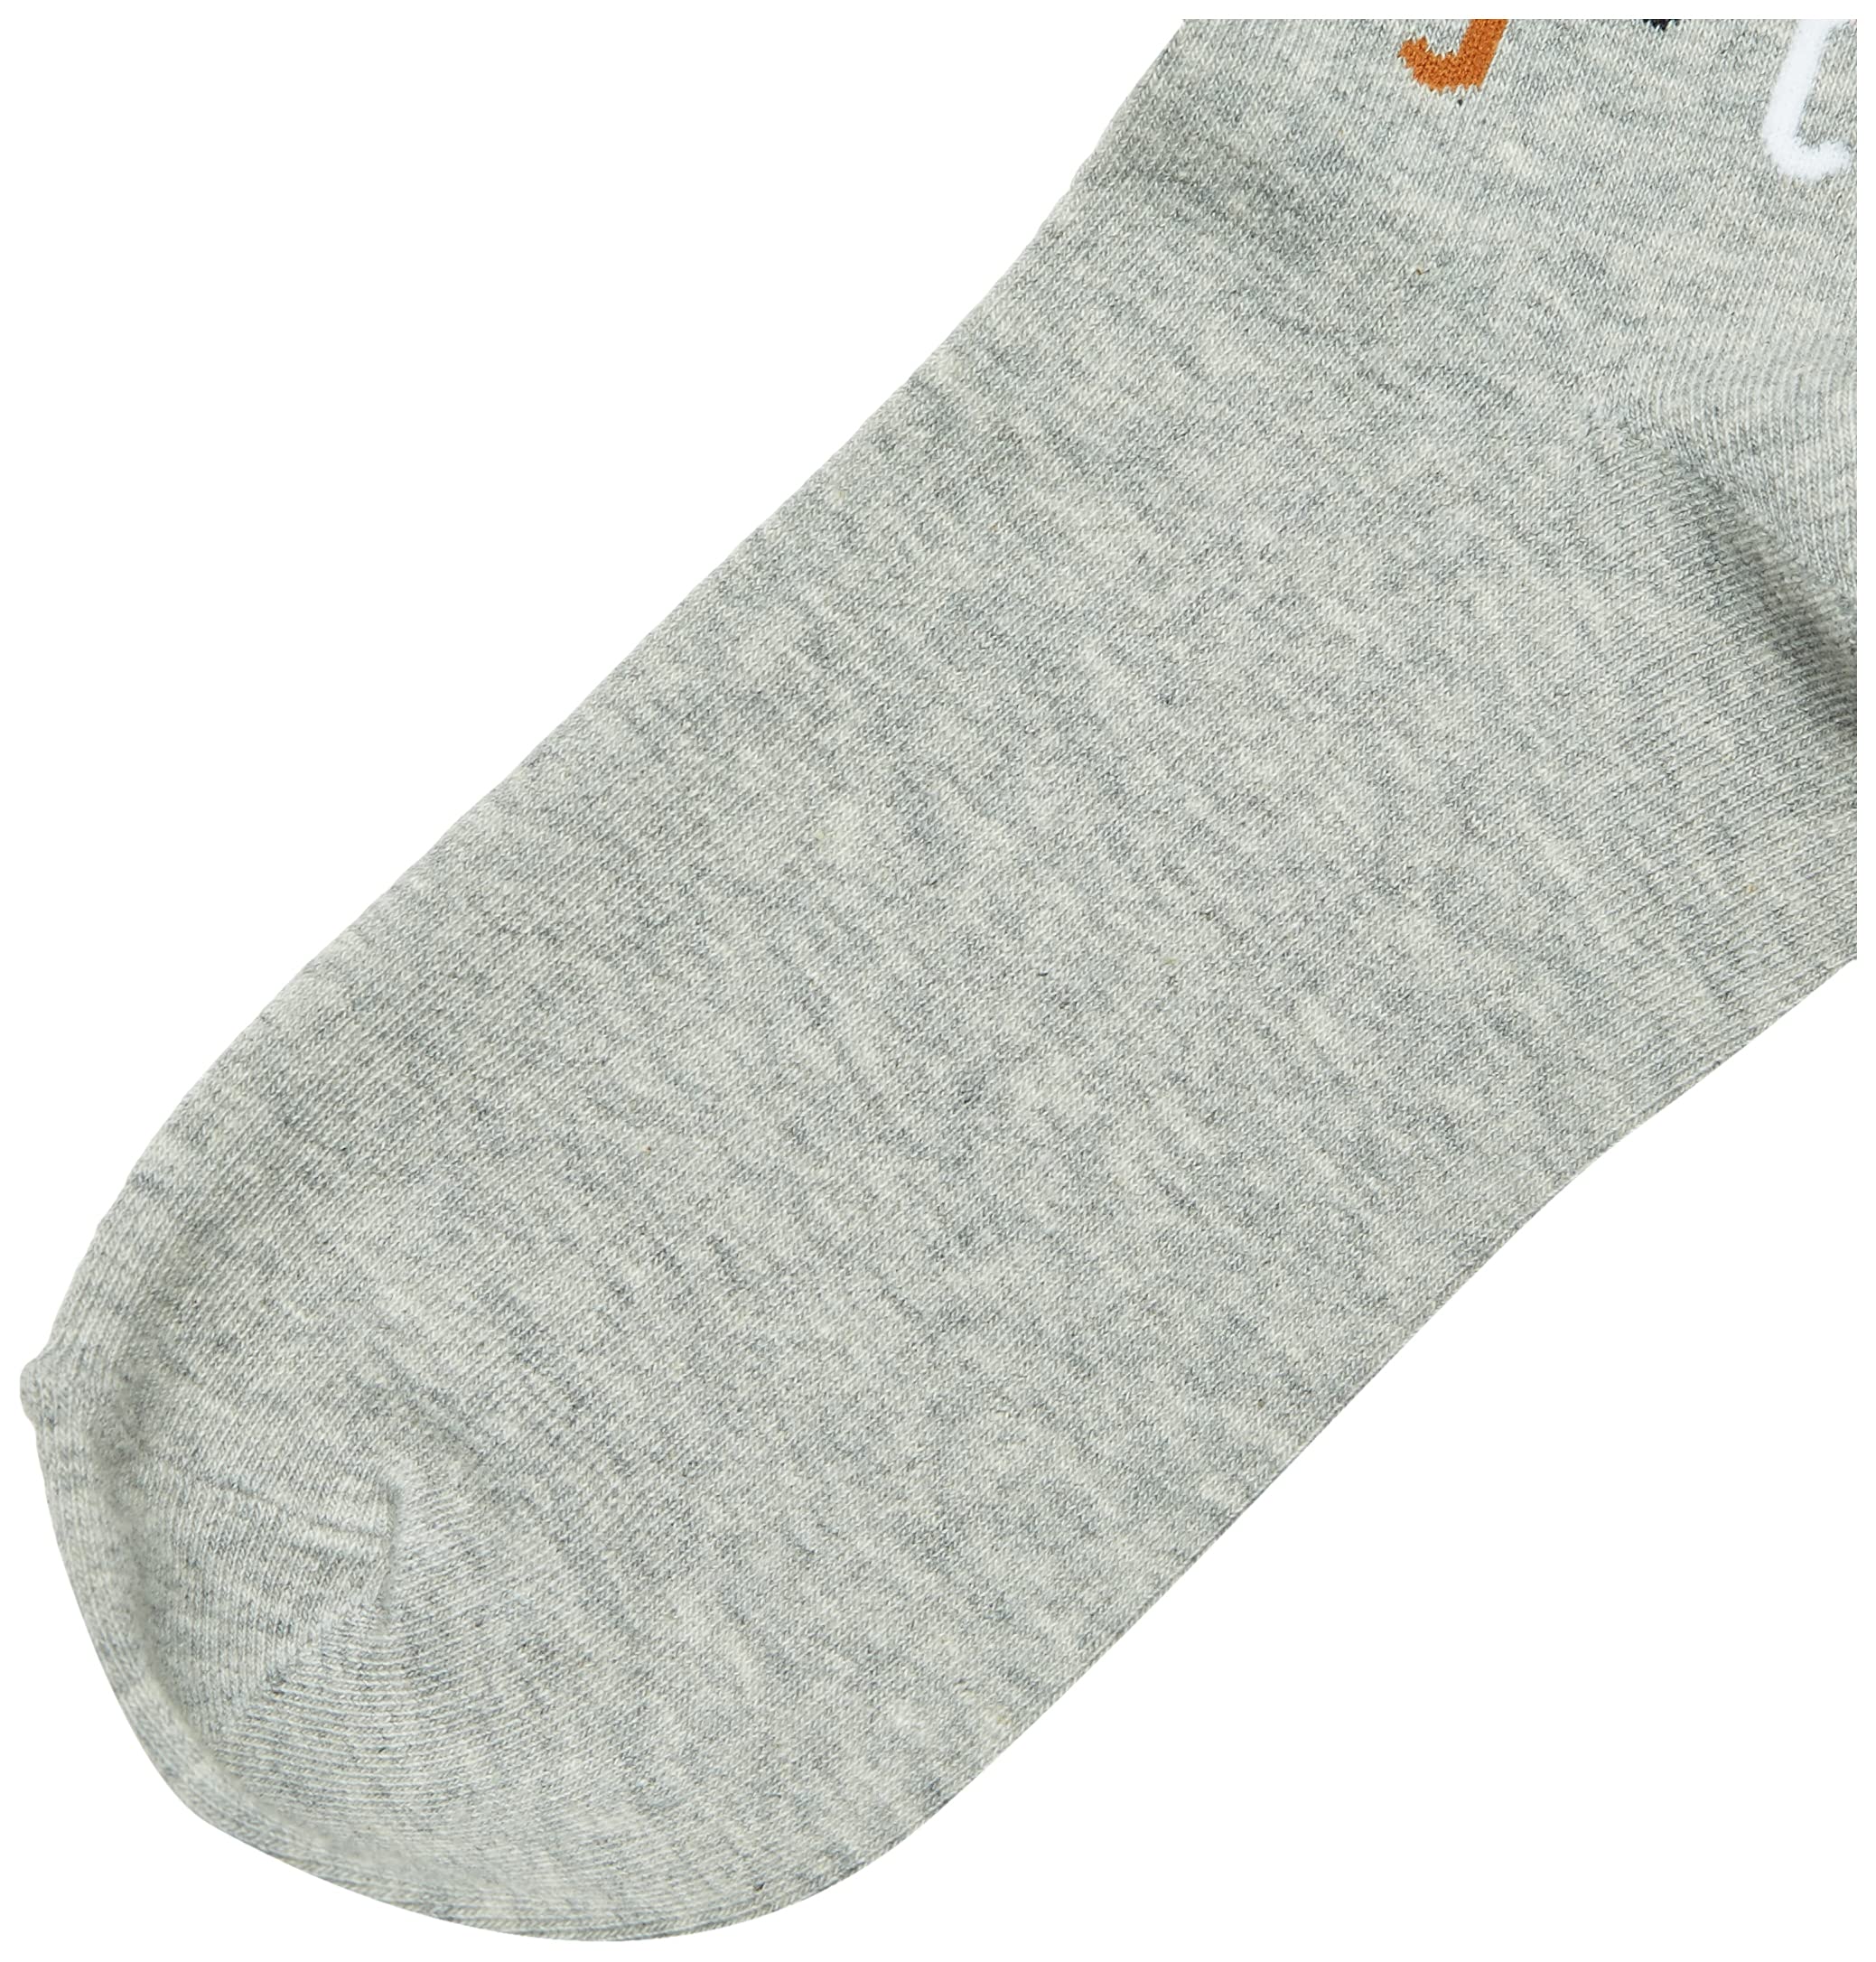 K. Bell Women's Lover's Fun & Cute Novelty Crew Socks, Cat Tails (Grey), Shoe Size: 4-10